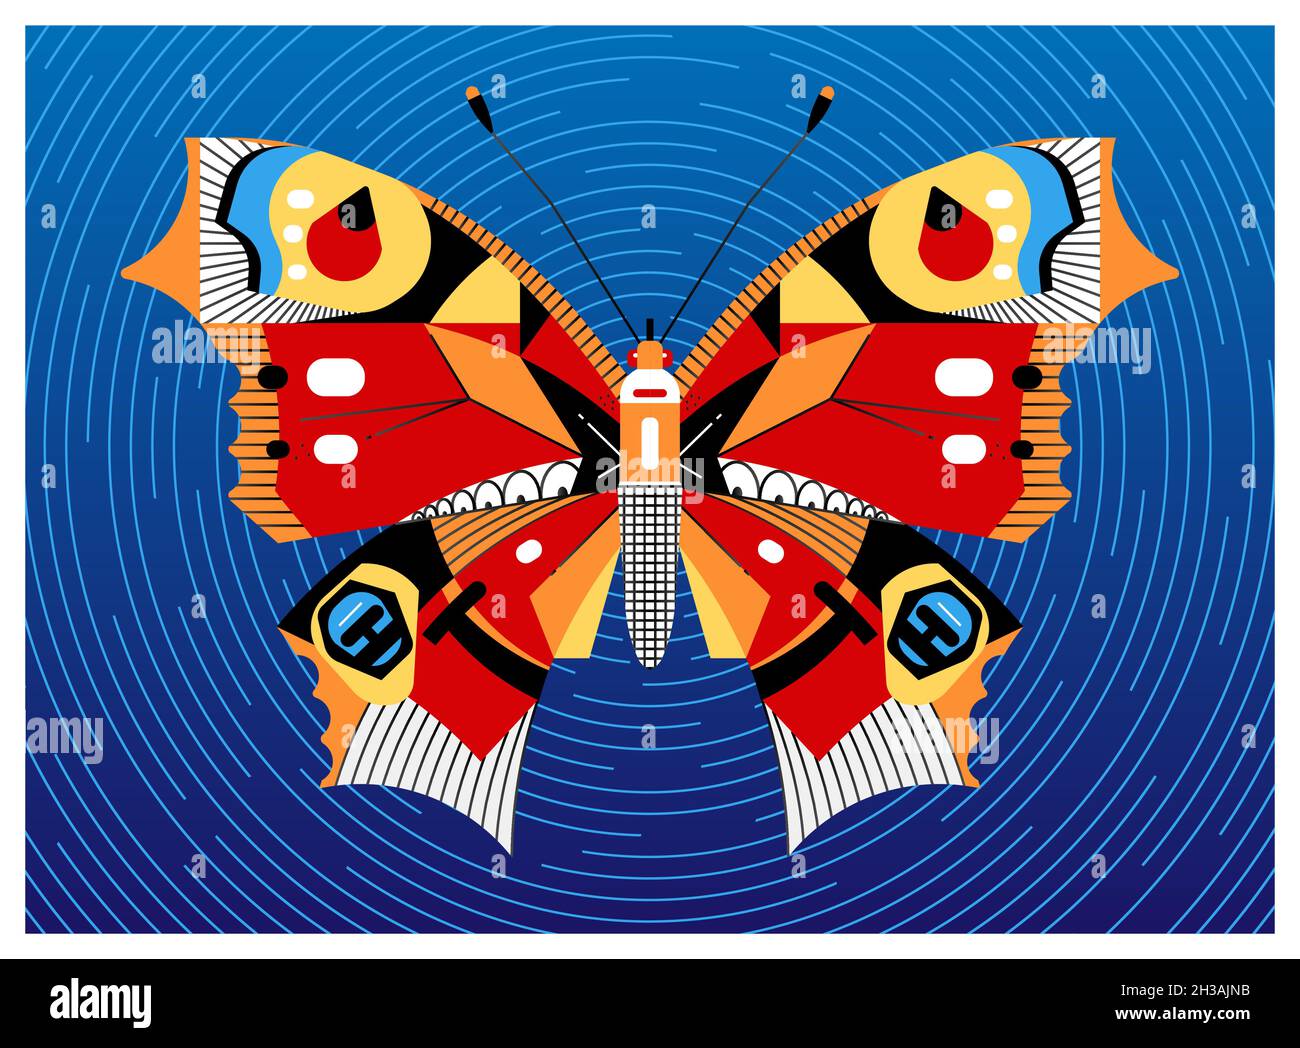 Diseño de mariposa de pavo real, diseño de dibujos animados planos. Fondo - cielo nocturno y pistas de estrellas en una exposición larga. Ilustración del Vector